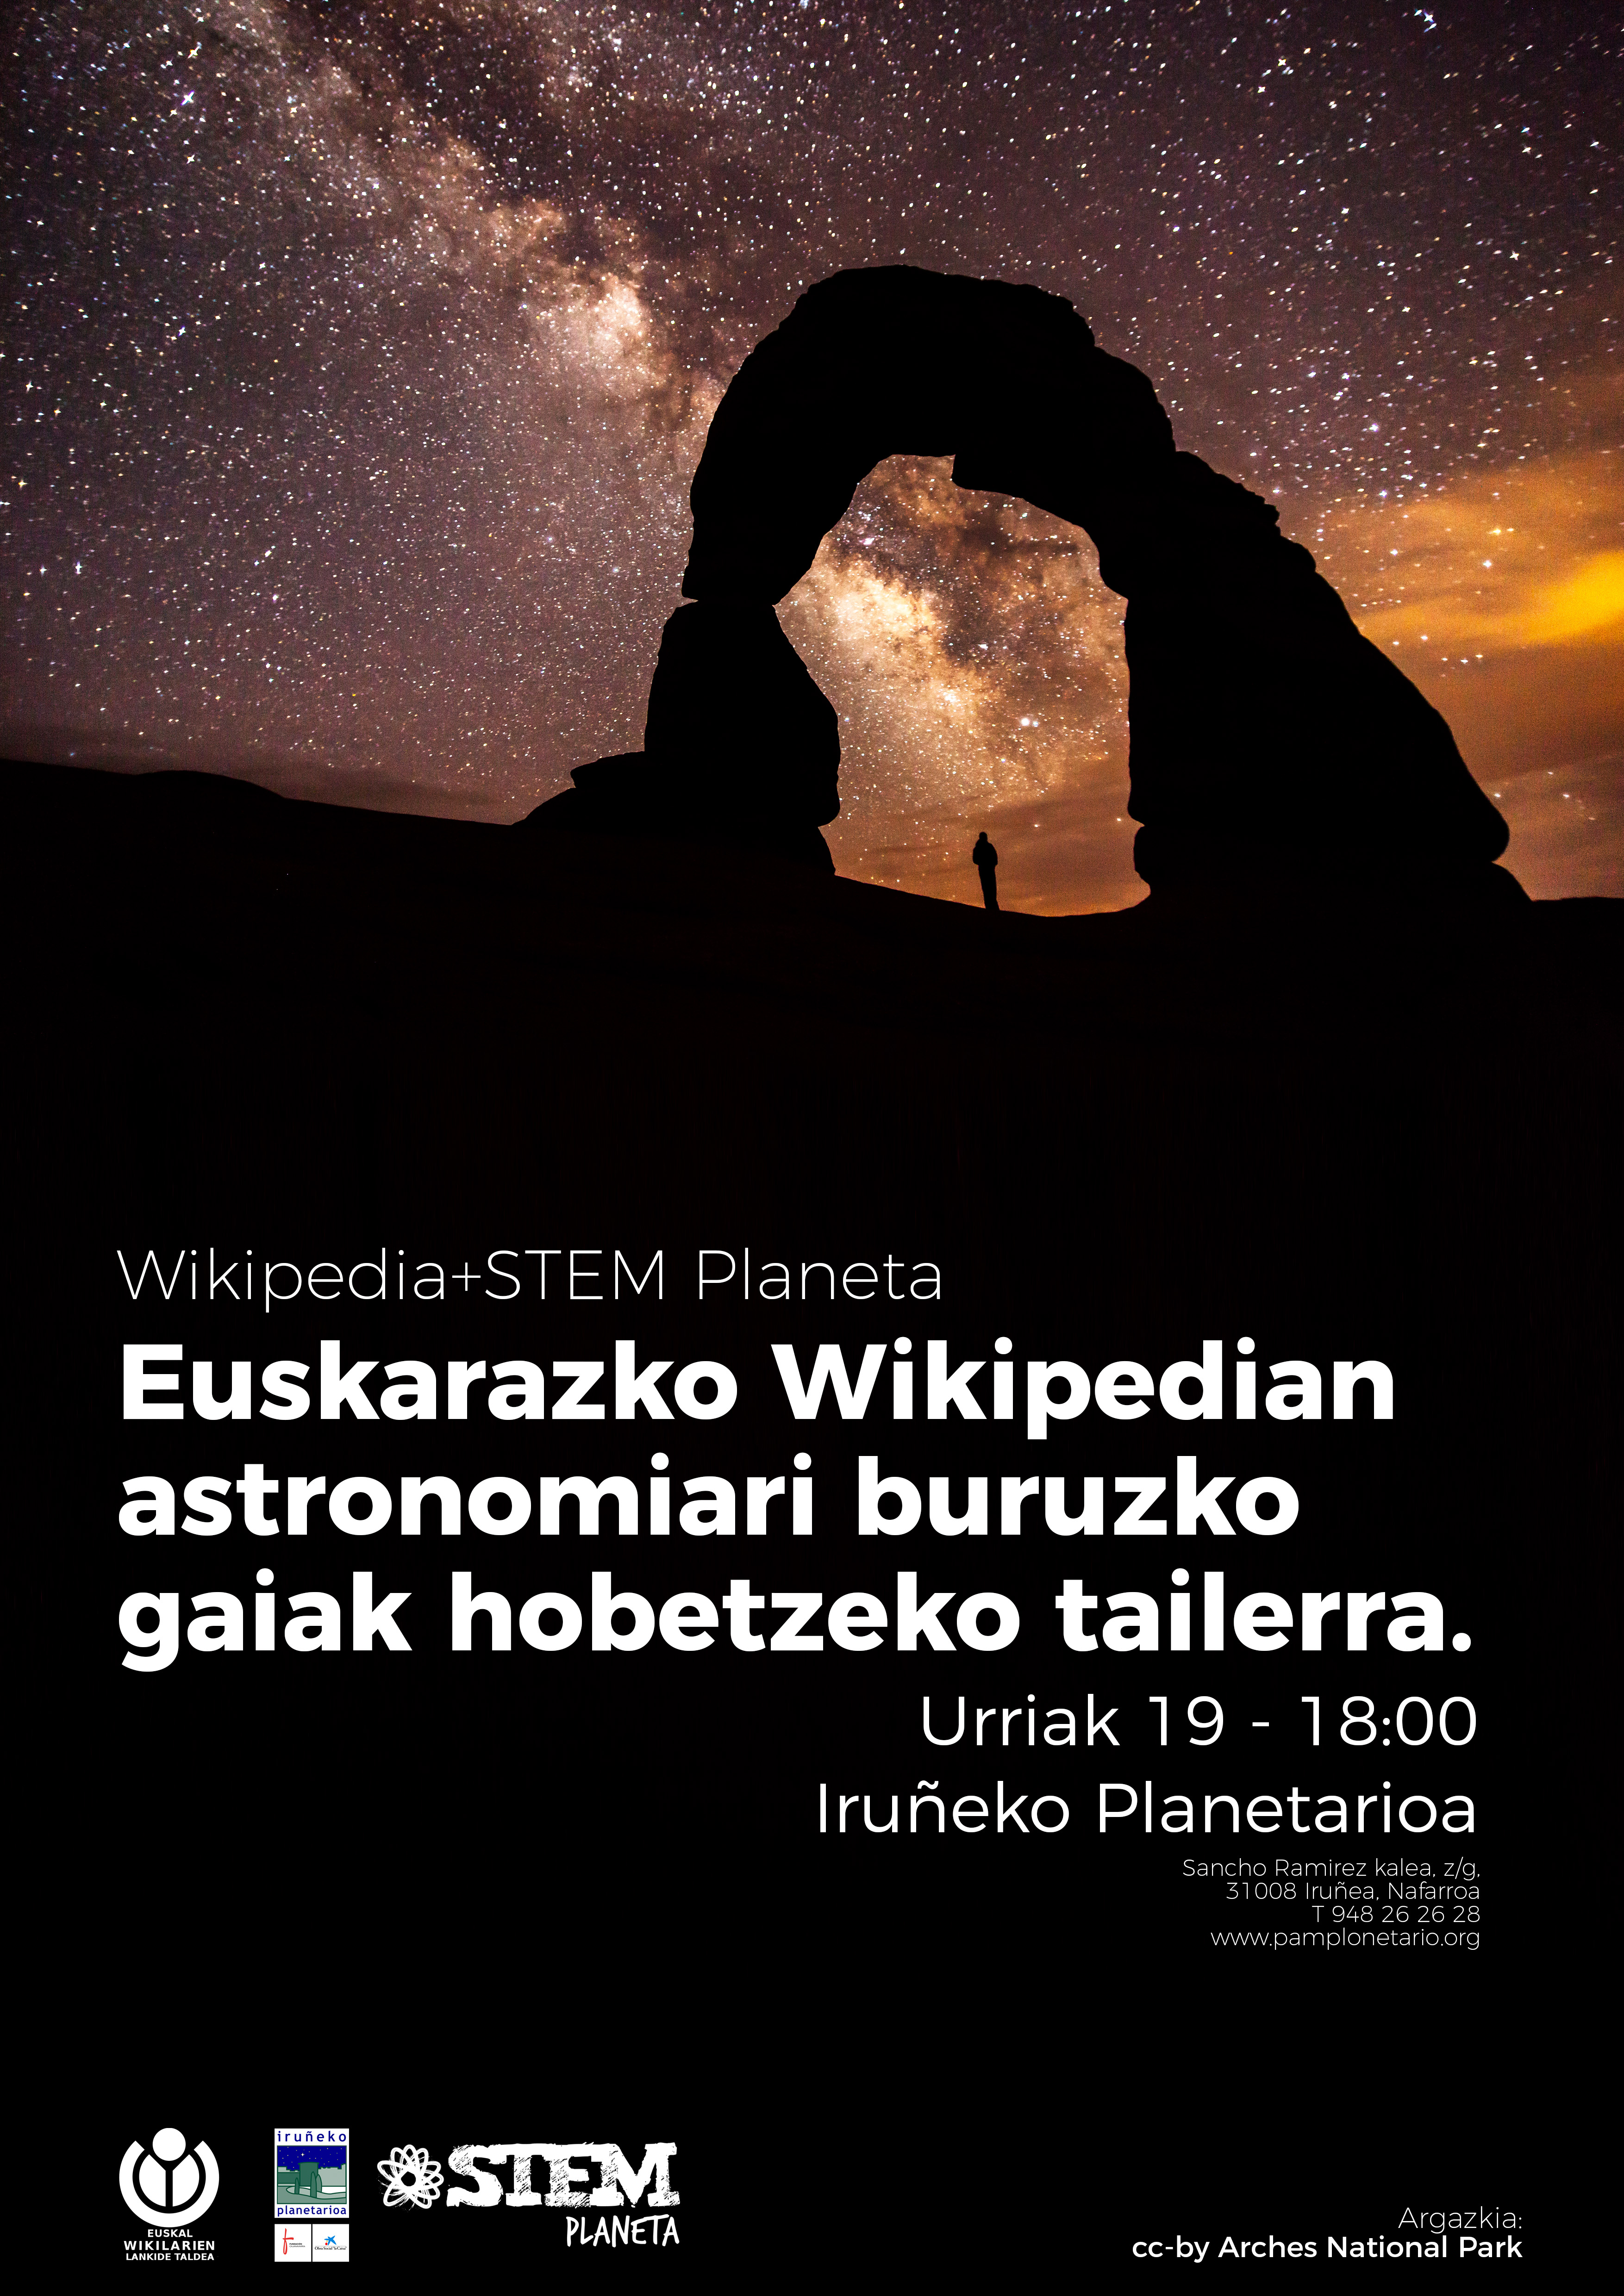 Euskarazko Wikipedian astronomiari lotutako gaiak hobetzeko zikloa jarriko dugu abian Iruñeko Planetarioarekin